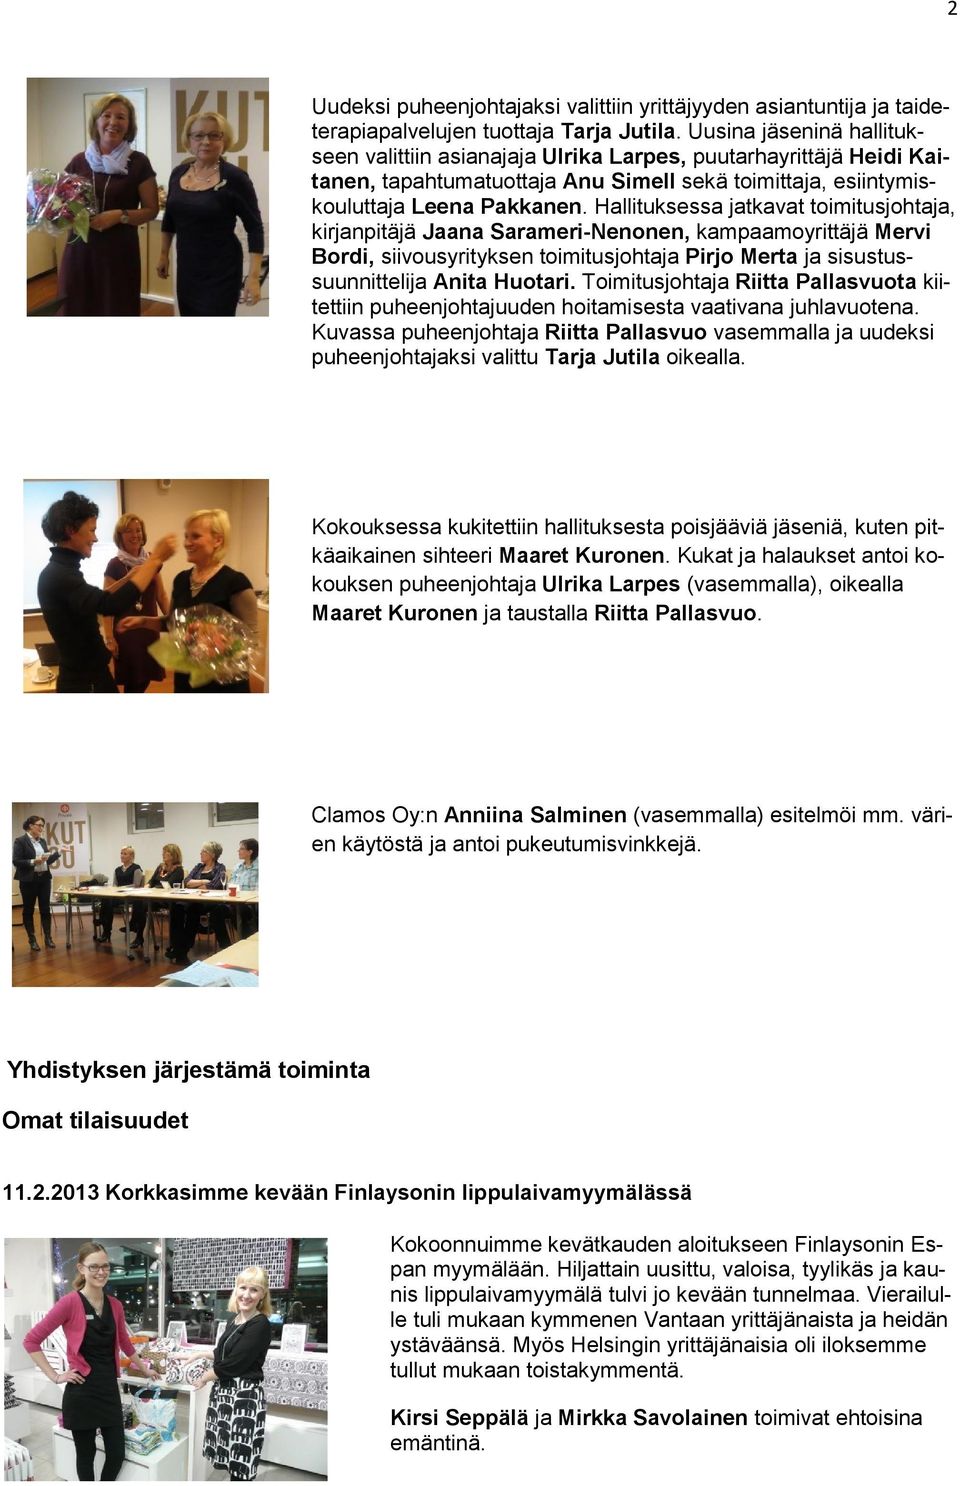 Hallituksessa jatkavat toimitusjohtaja, kirjanpitäjä Jaana Sarameri-Nenonen, kampaamoyrittäjä Mervi Bordi, siivousyrityksen toimitusjohtaja Pirjo Merta ja sisustussuunnittelija Anita Huotari.